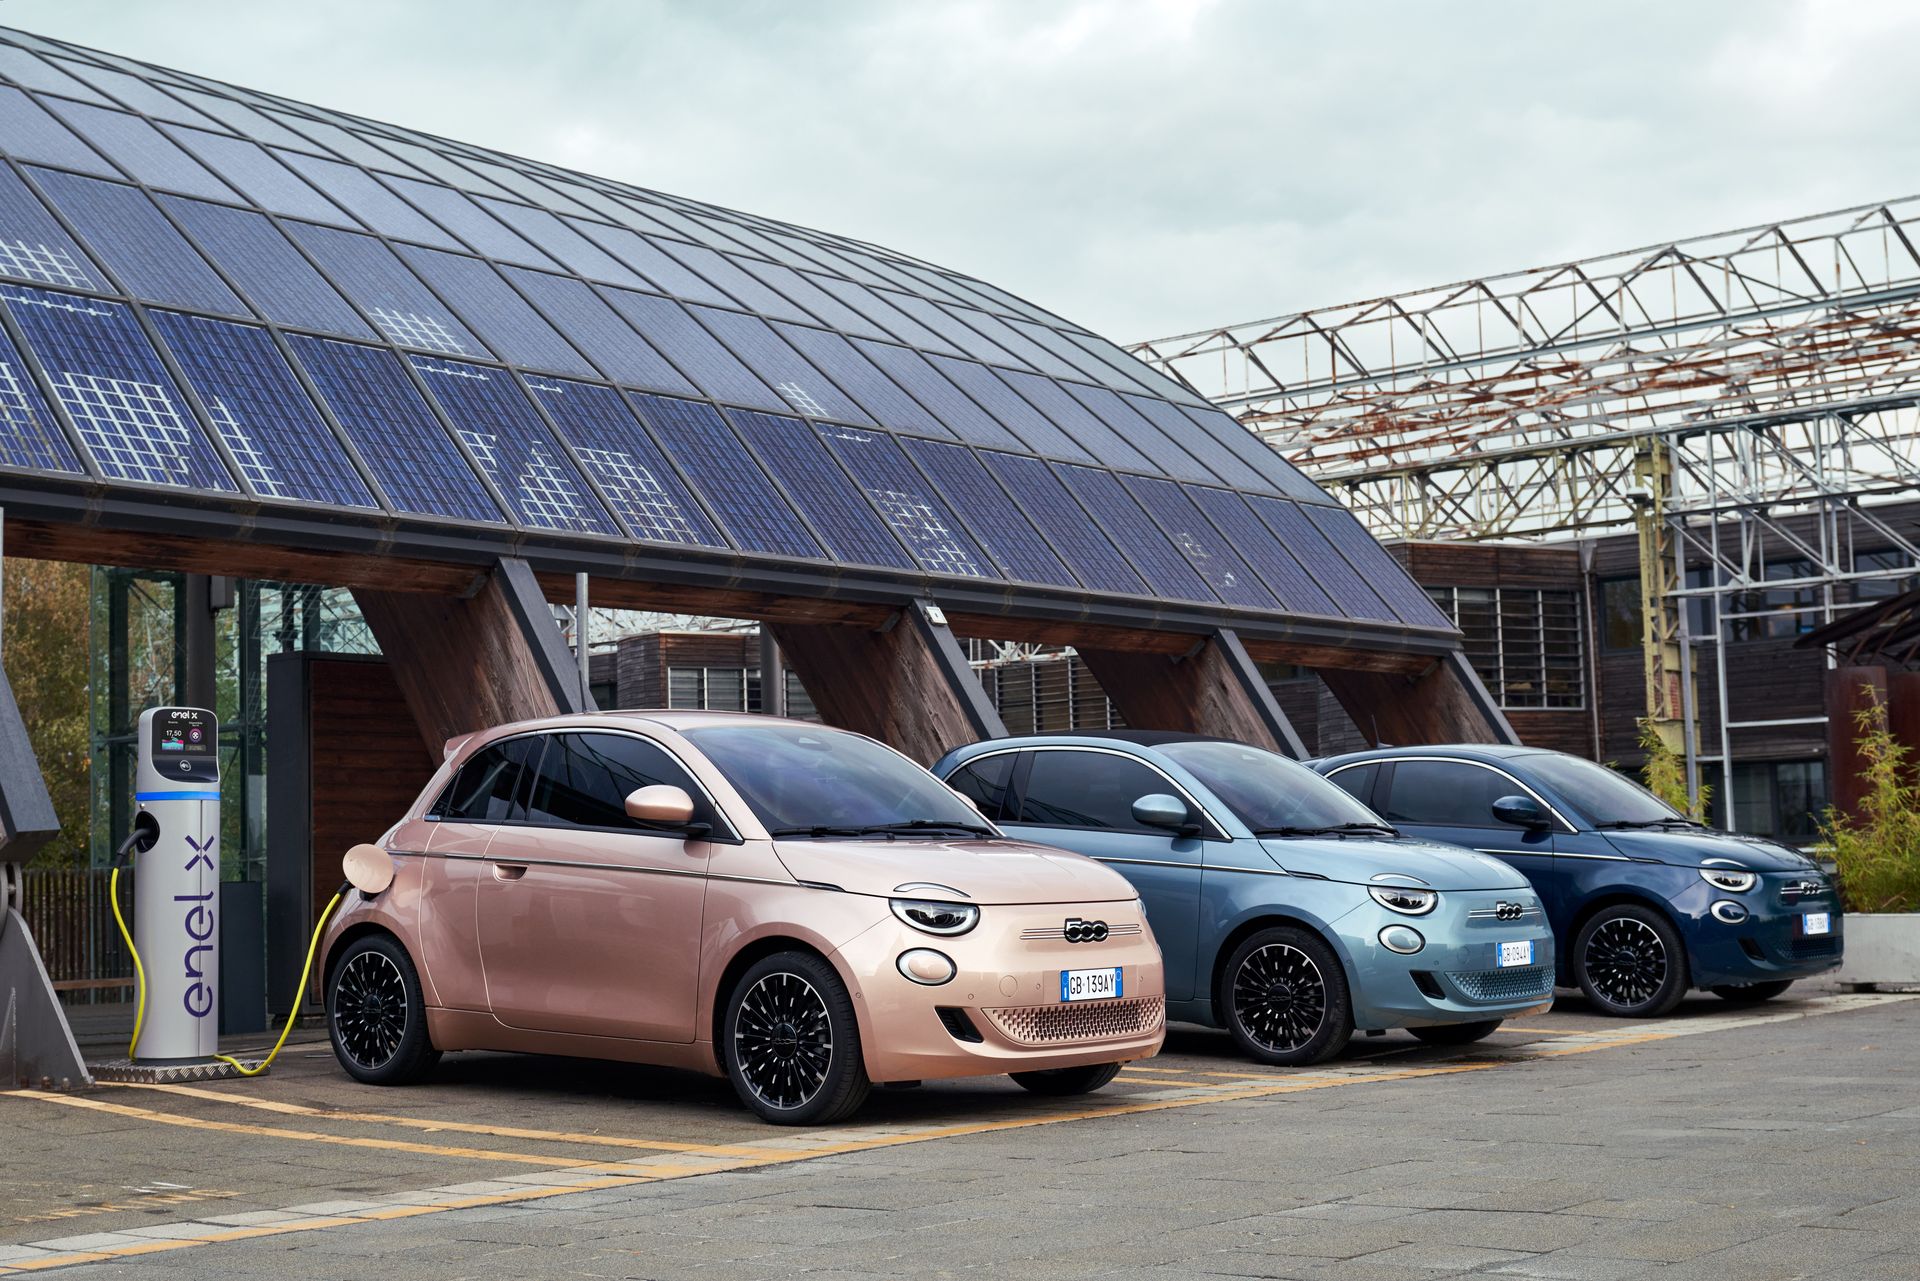 Ventes de voitures électriques : Stellantis passe devant Tesla